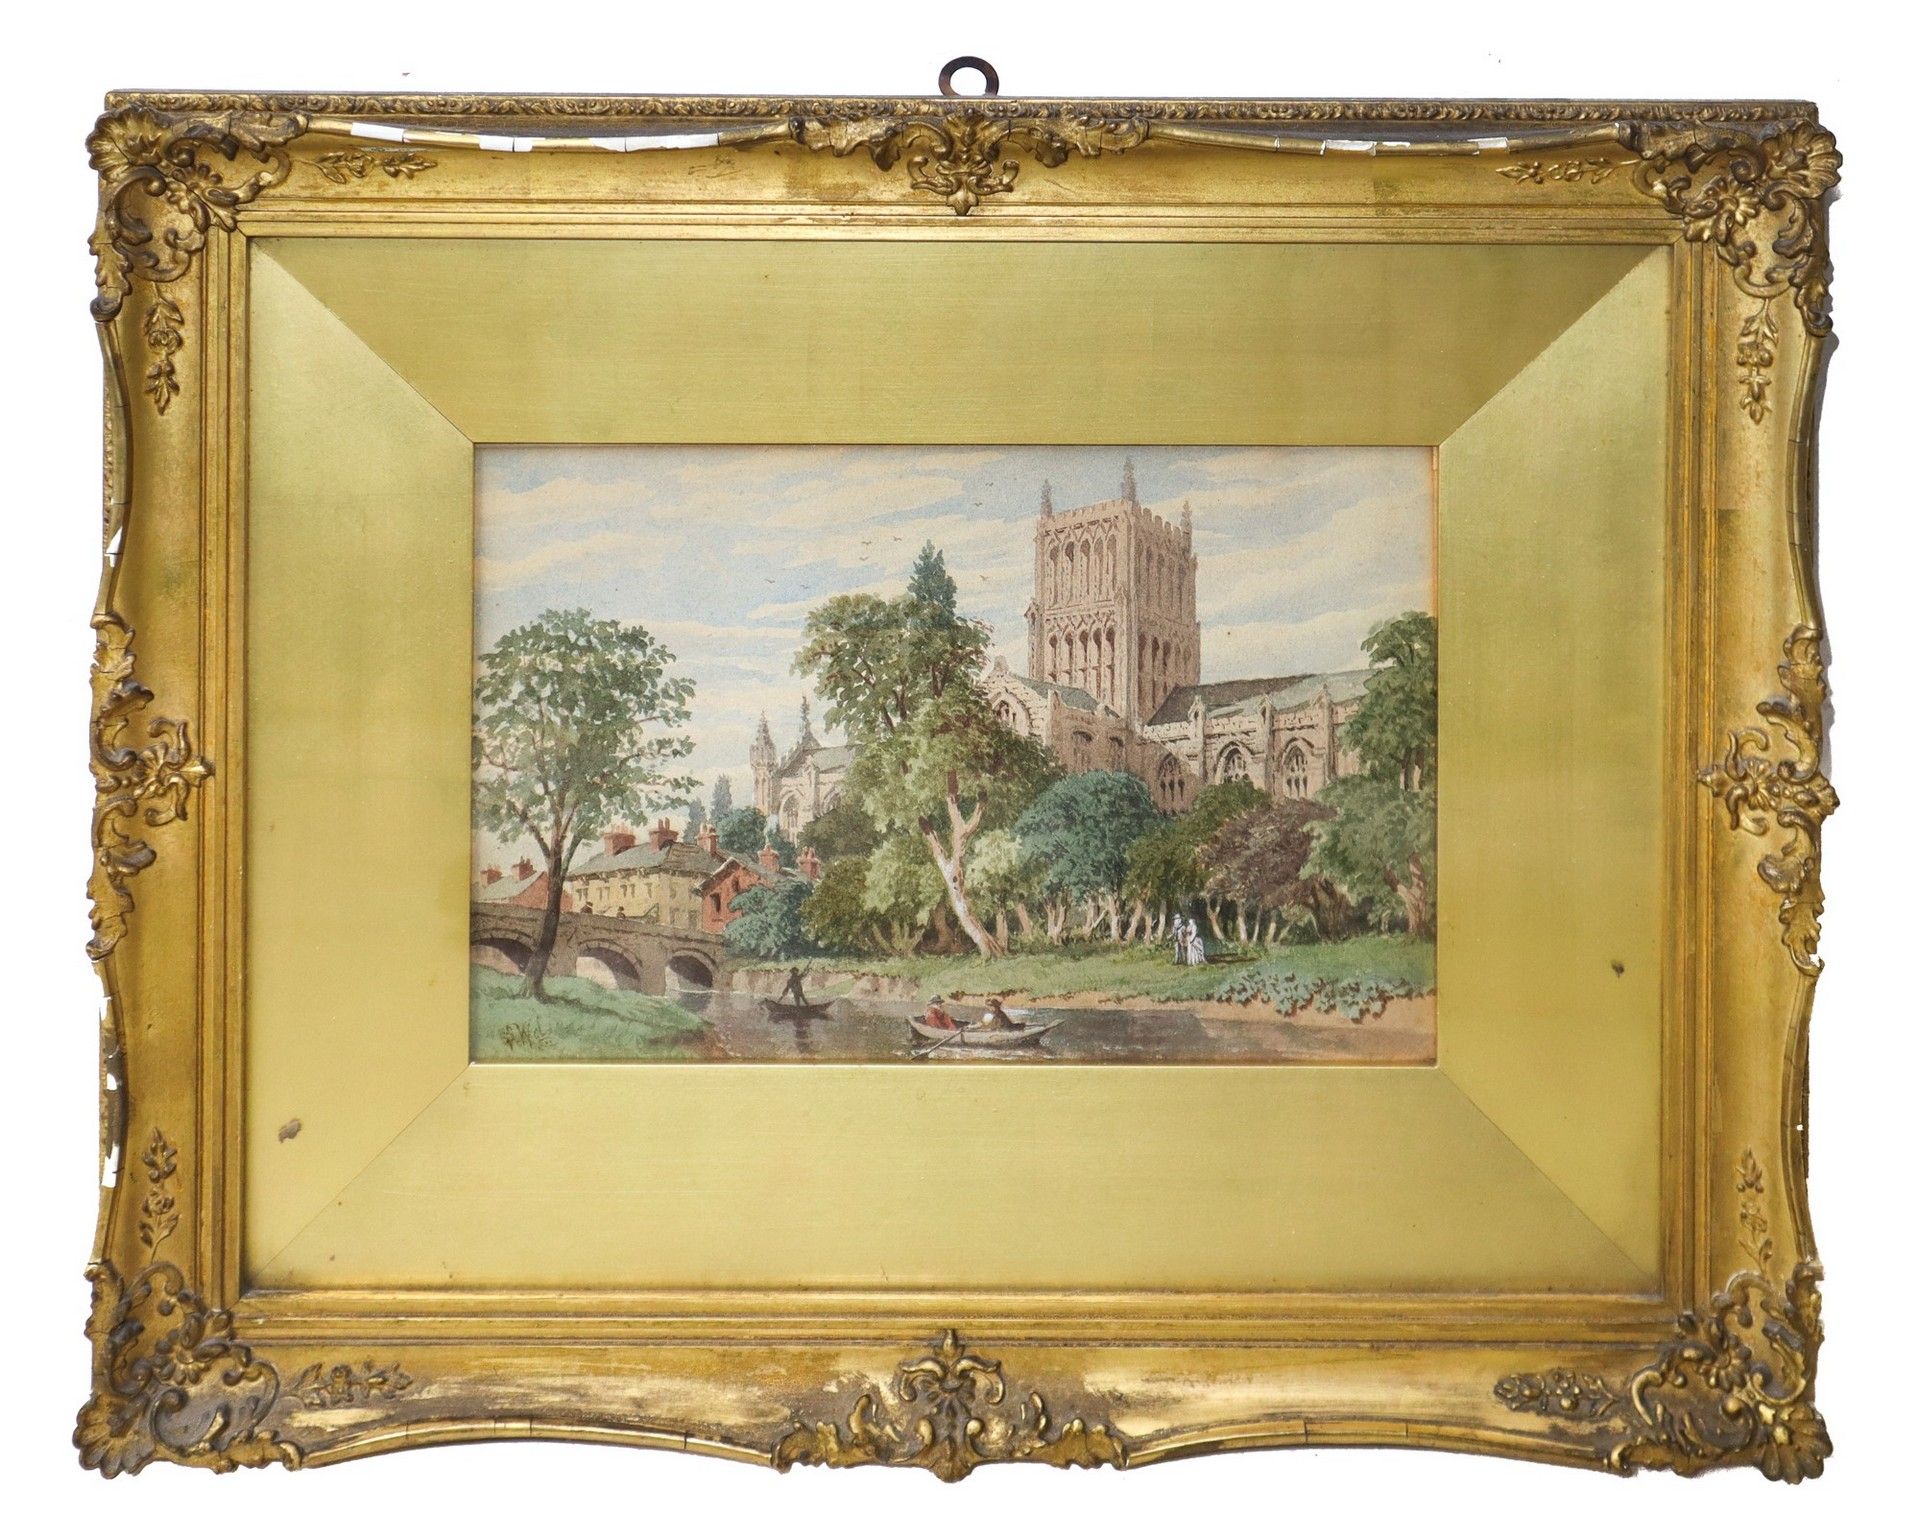 Null 河流上的大教堂景观，18世纪 H cm 19x28 in frame 38x47 纸上水彩画，左下角署名S.W.D. 在镀金的木框中